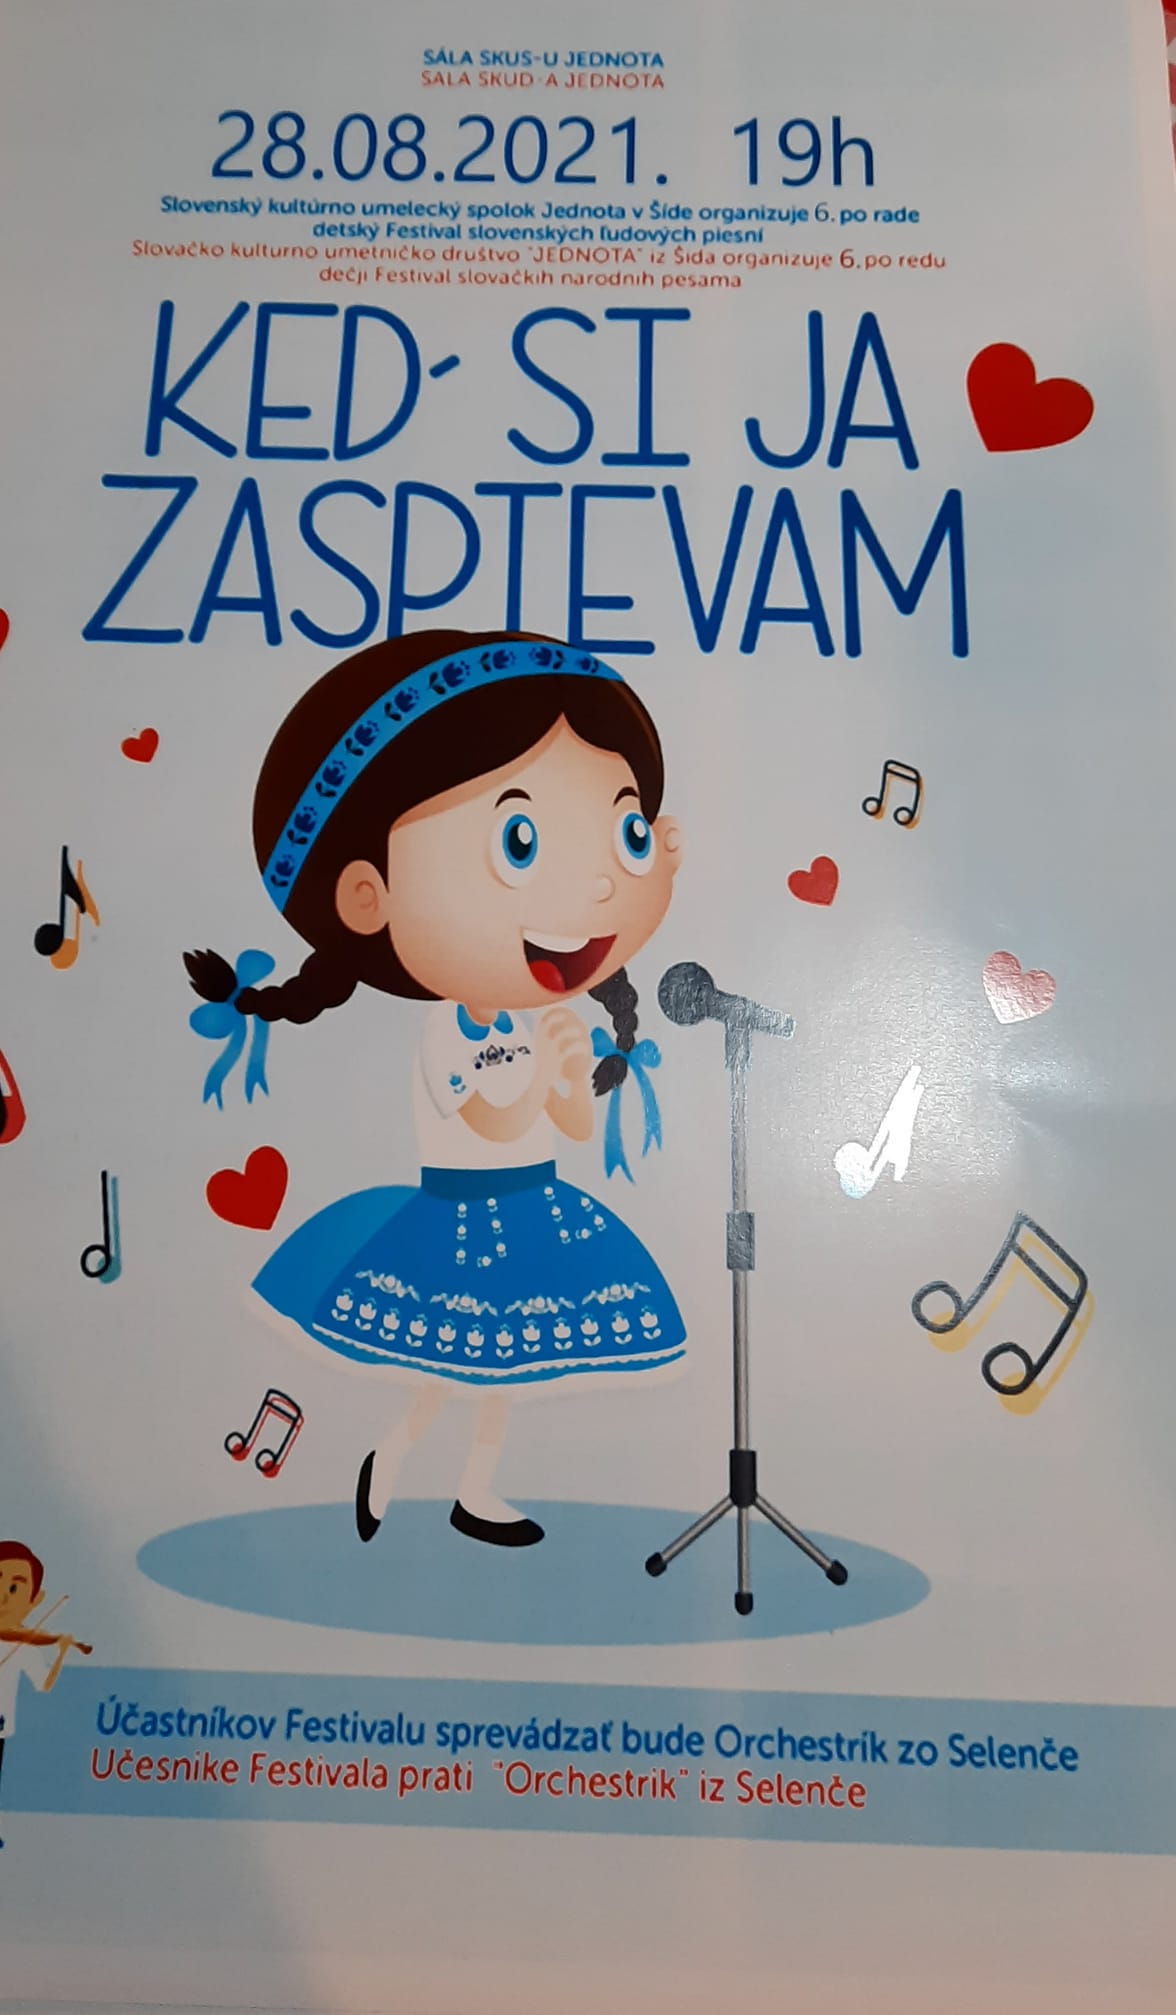 NOV - - - Ke si ja zaspievam 2021 d - VI. Detsk festival slovenskch udovch piesn 